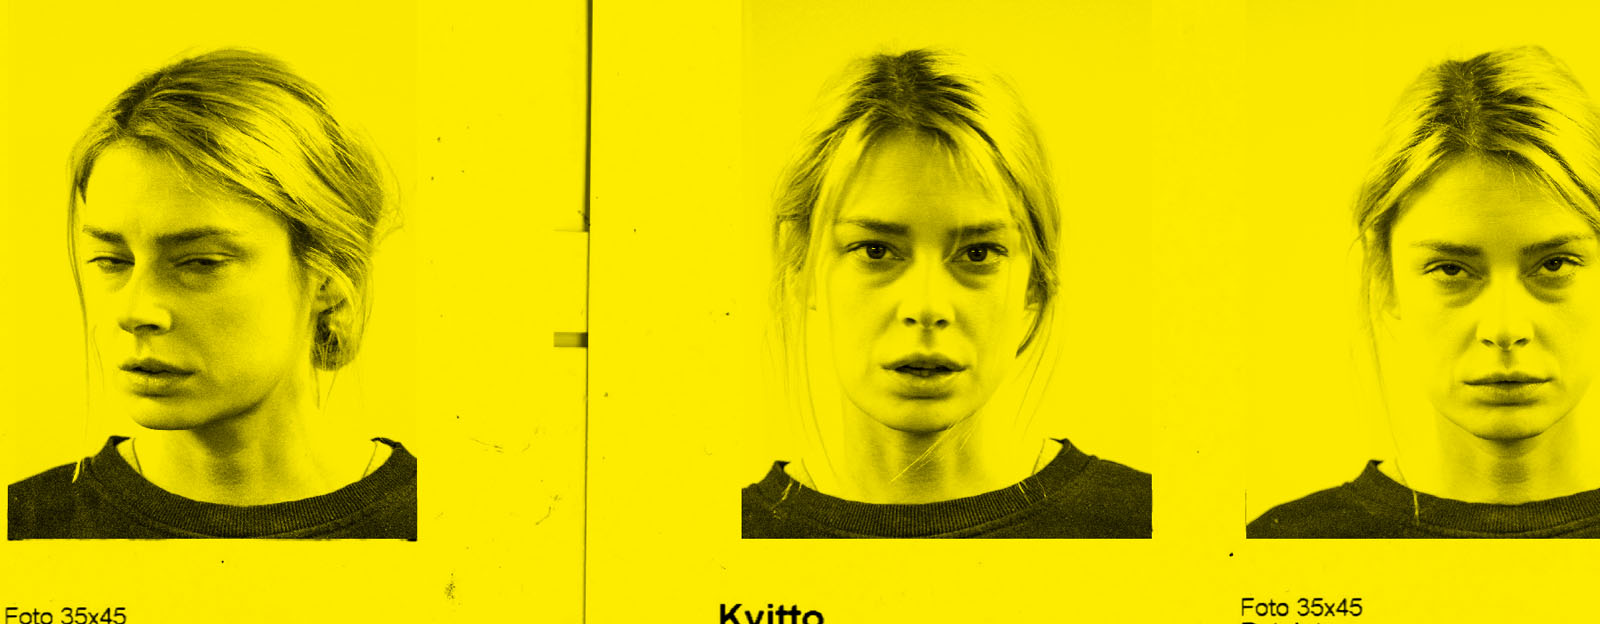 En rad passfoton av Alexandra Nordberg från en automat. Svartvita bilder mot gul bakgrund.